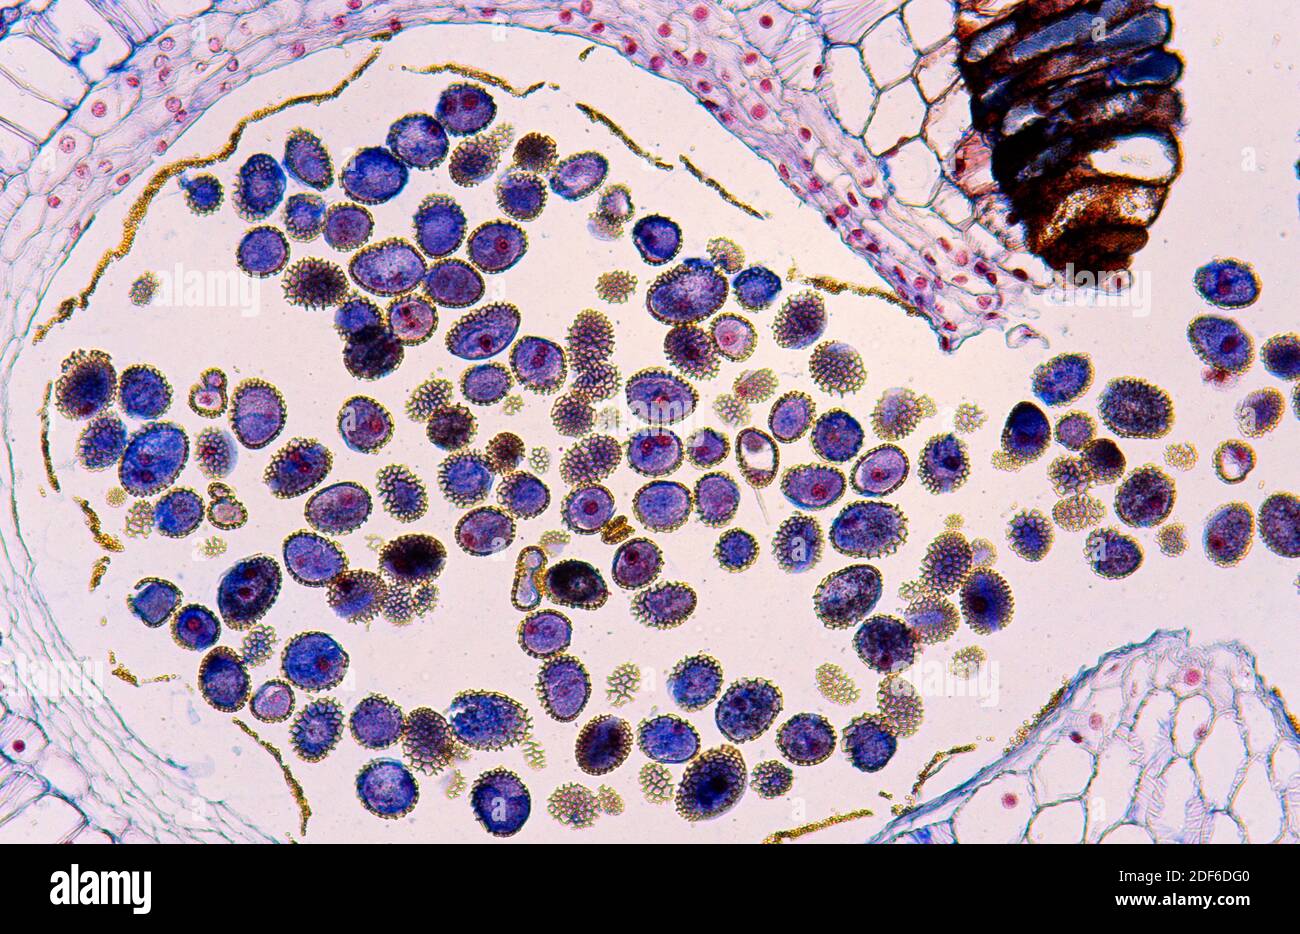 Antera di giglio con polline. Microscopio ottico, ingrandimento X100. Foto Stock